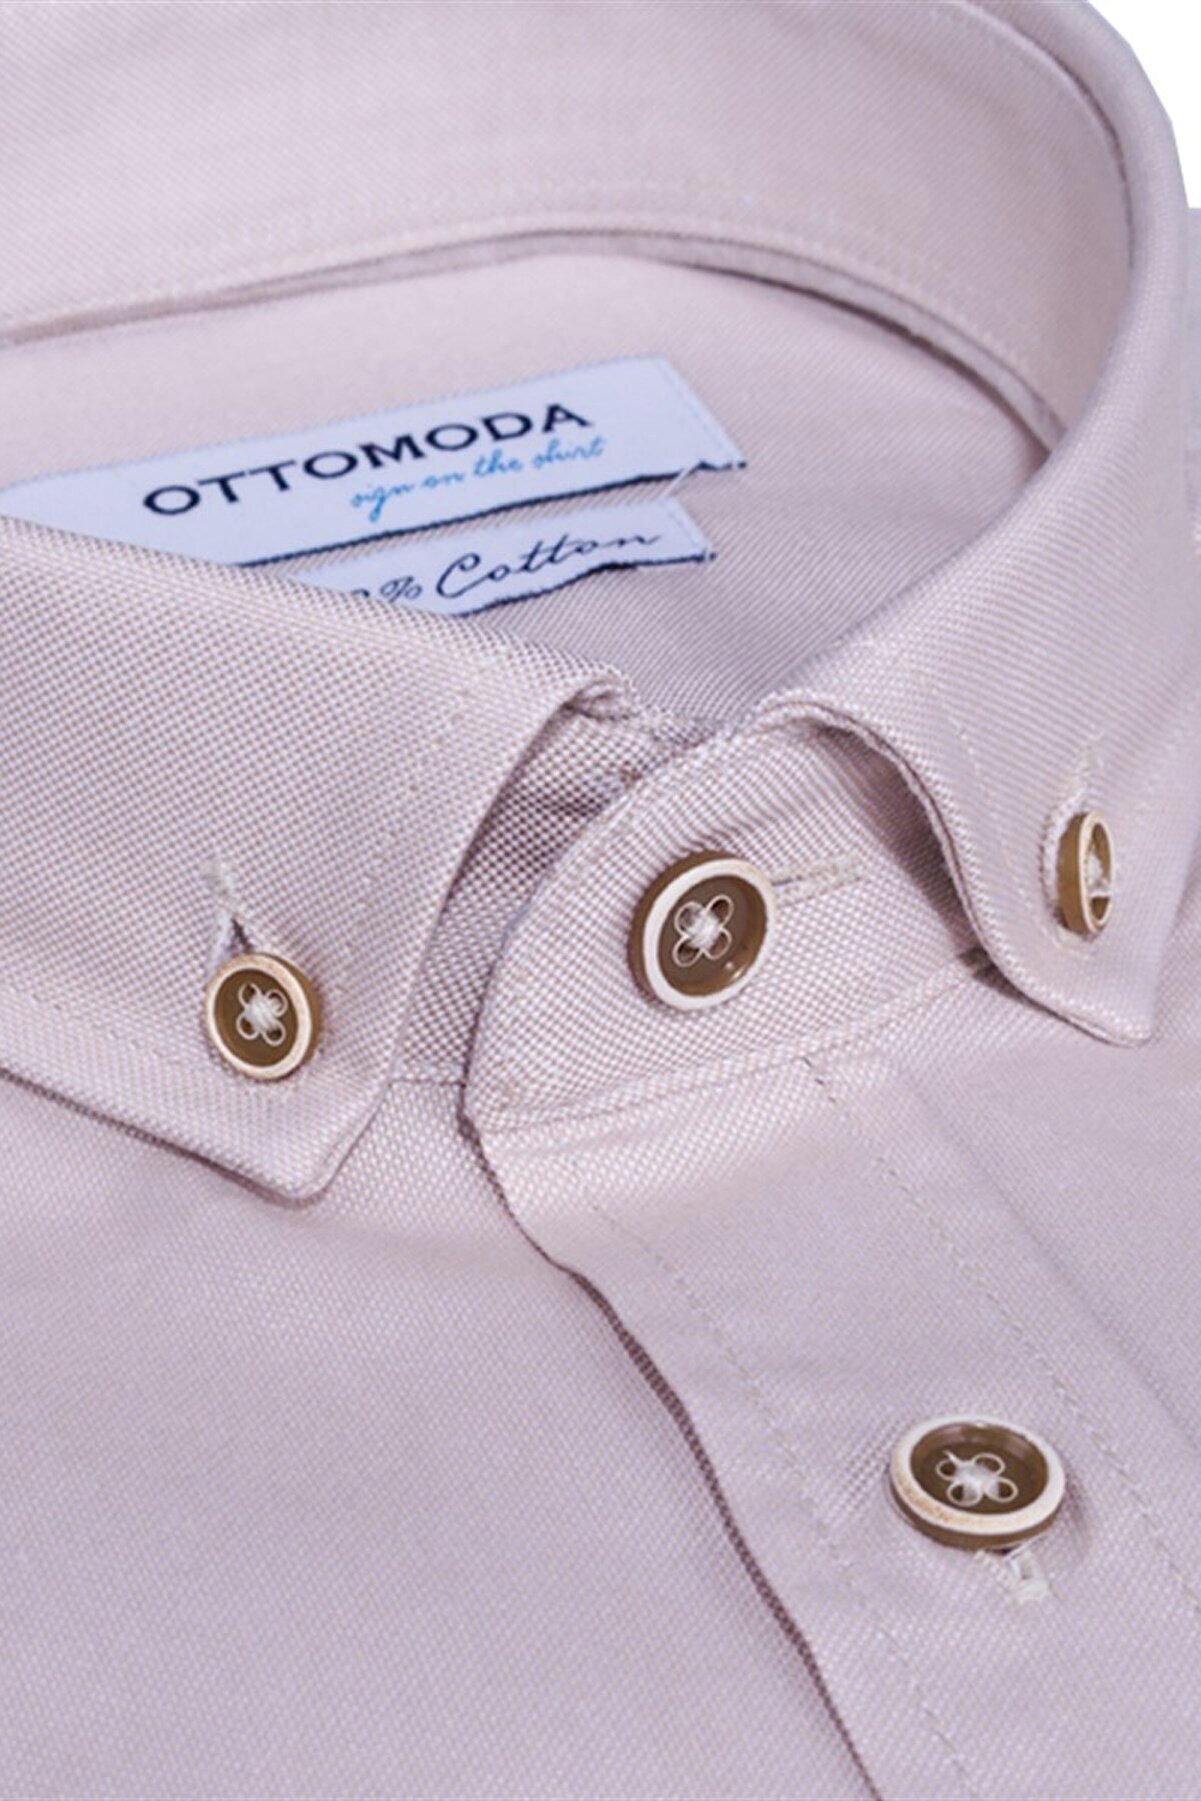 Ottomoda Erkek Bej Uzun Kollu Yarı Slim Oxford Pamuklu Gömlek,ot-c-20148